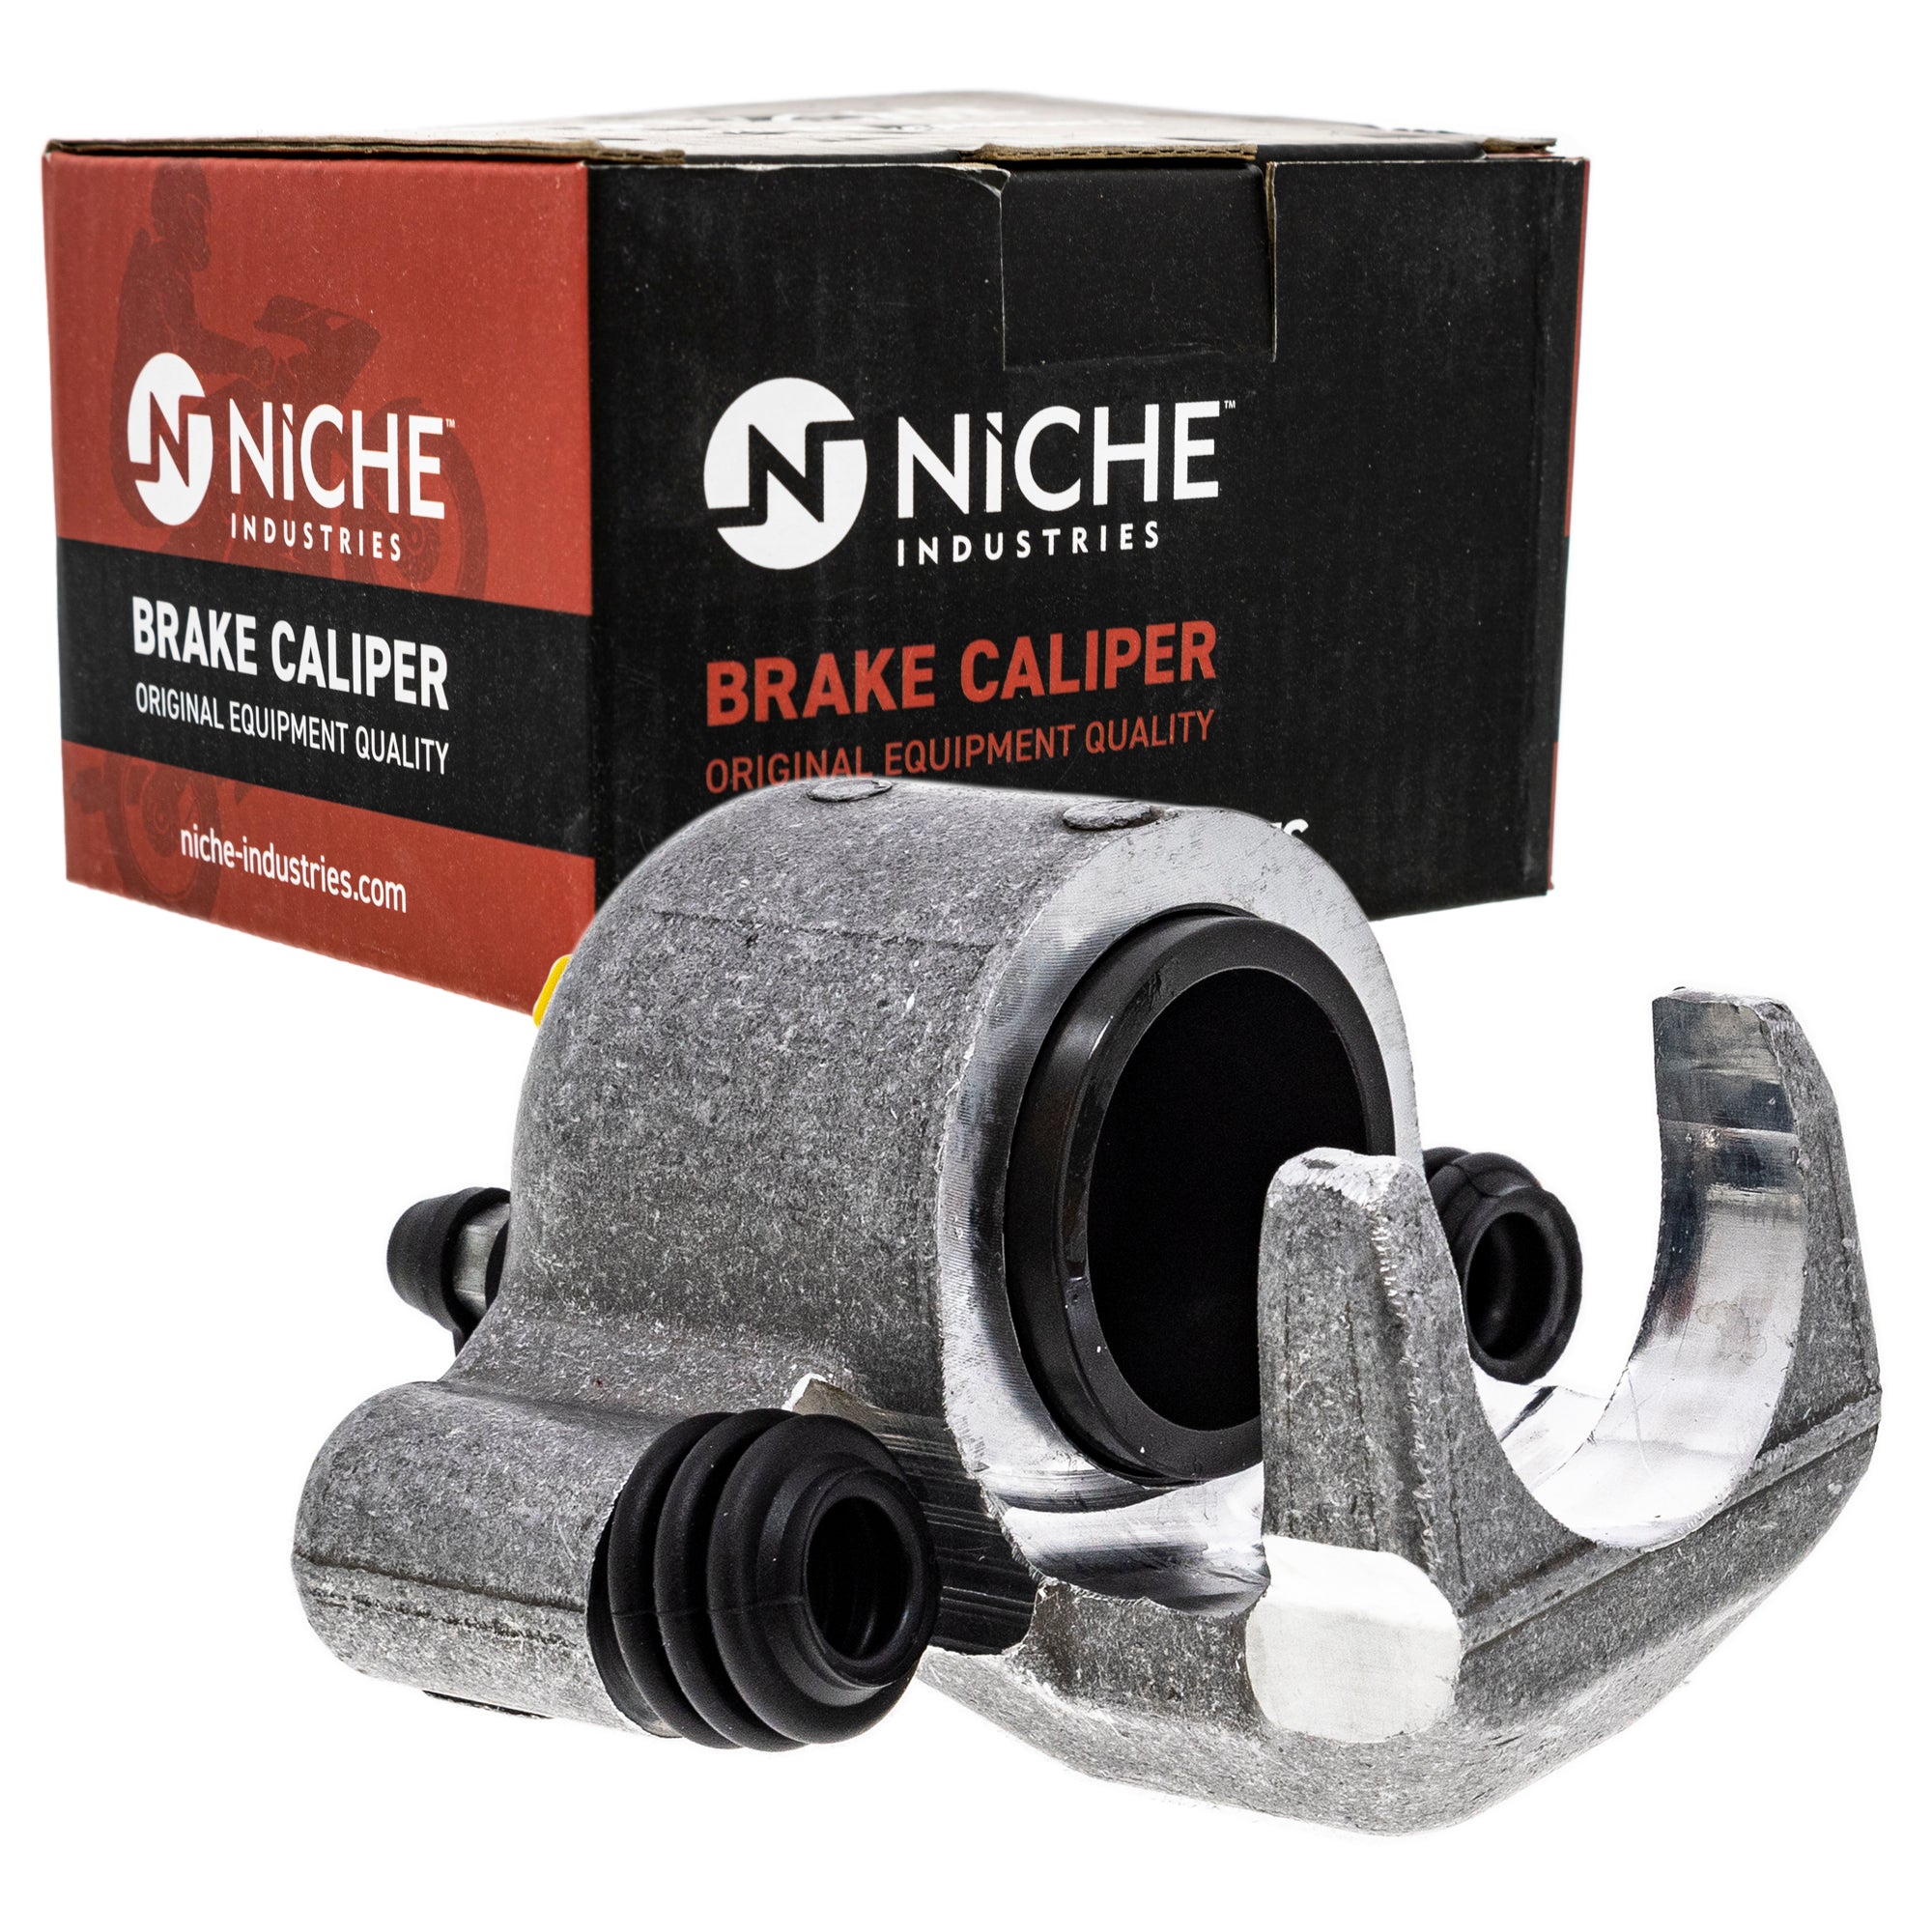 NICHE MK1001235 Brake Caliper Kit